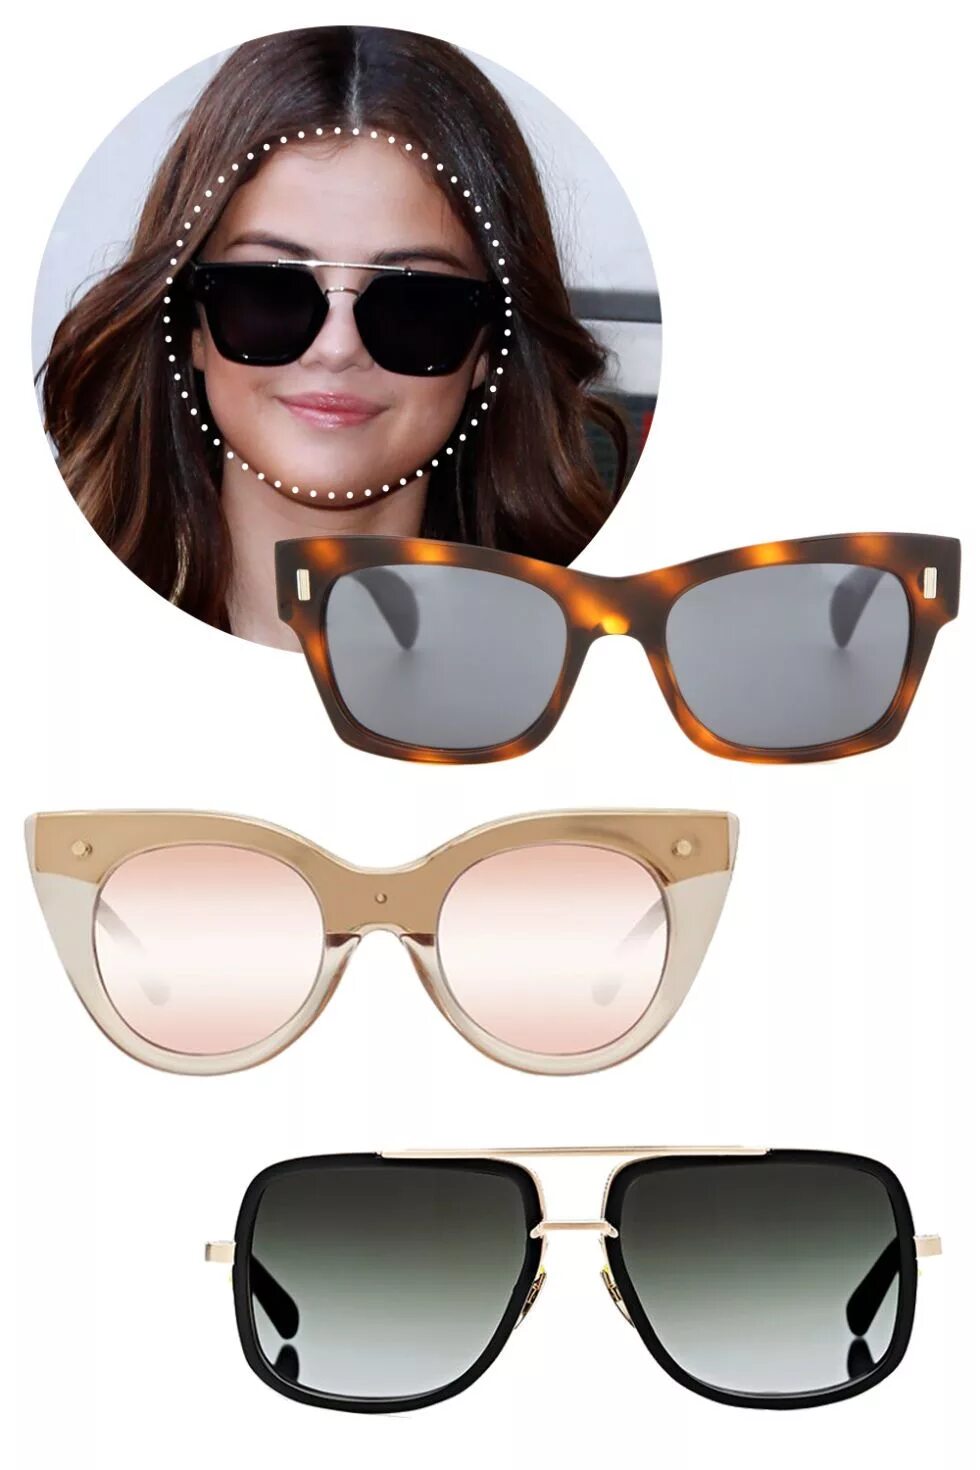 Форма очков для круглого лица женские солнцезащитные. Солнцезащитные очки. Солнцезащитные очки формы. Солнечные очки для круглолицых. Солнцезащитные очки для круглого лица.